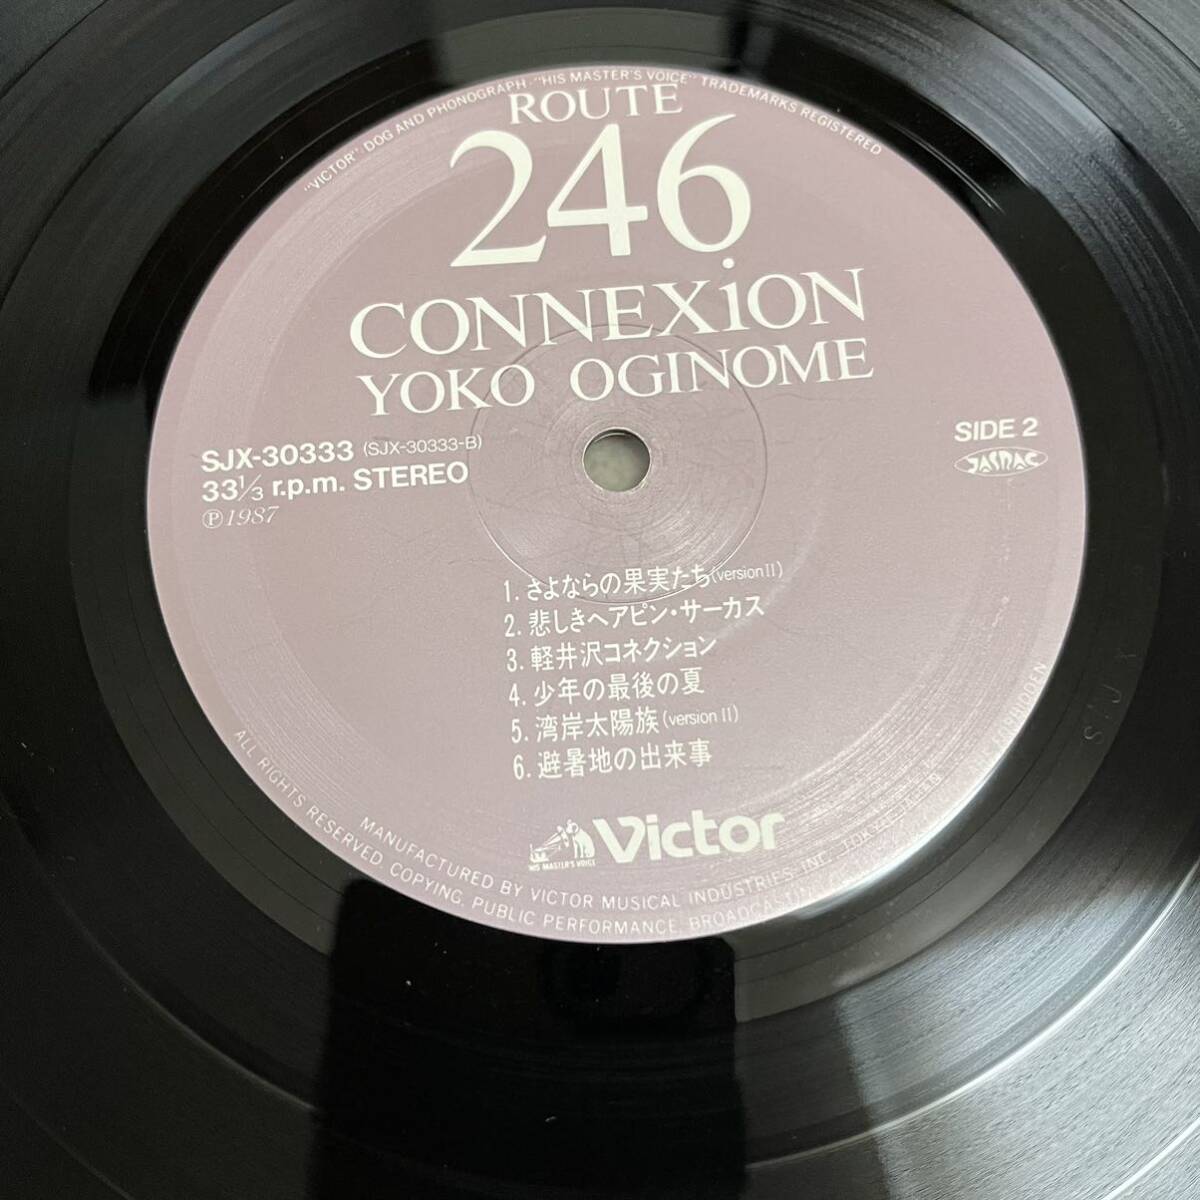 荻野目洋子 ROUTE 246 CONNEXION OGINOME YOKO 246コネクション / LP レコード / SJX30333 / ライナー有 / 和モノ 昭和アイドルの画像8